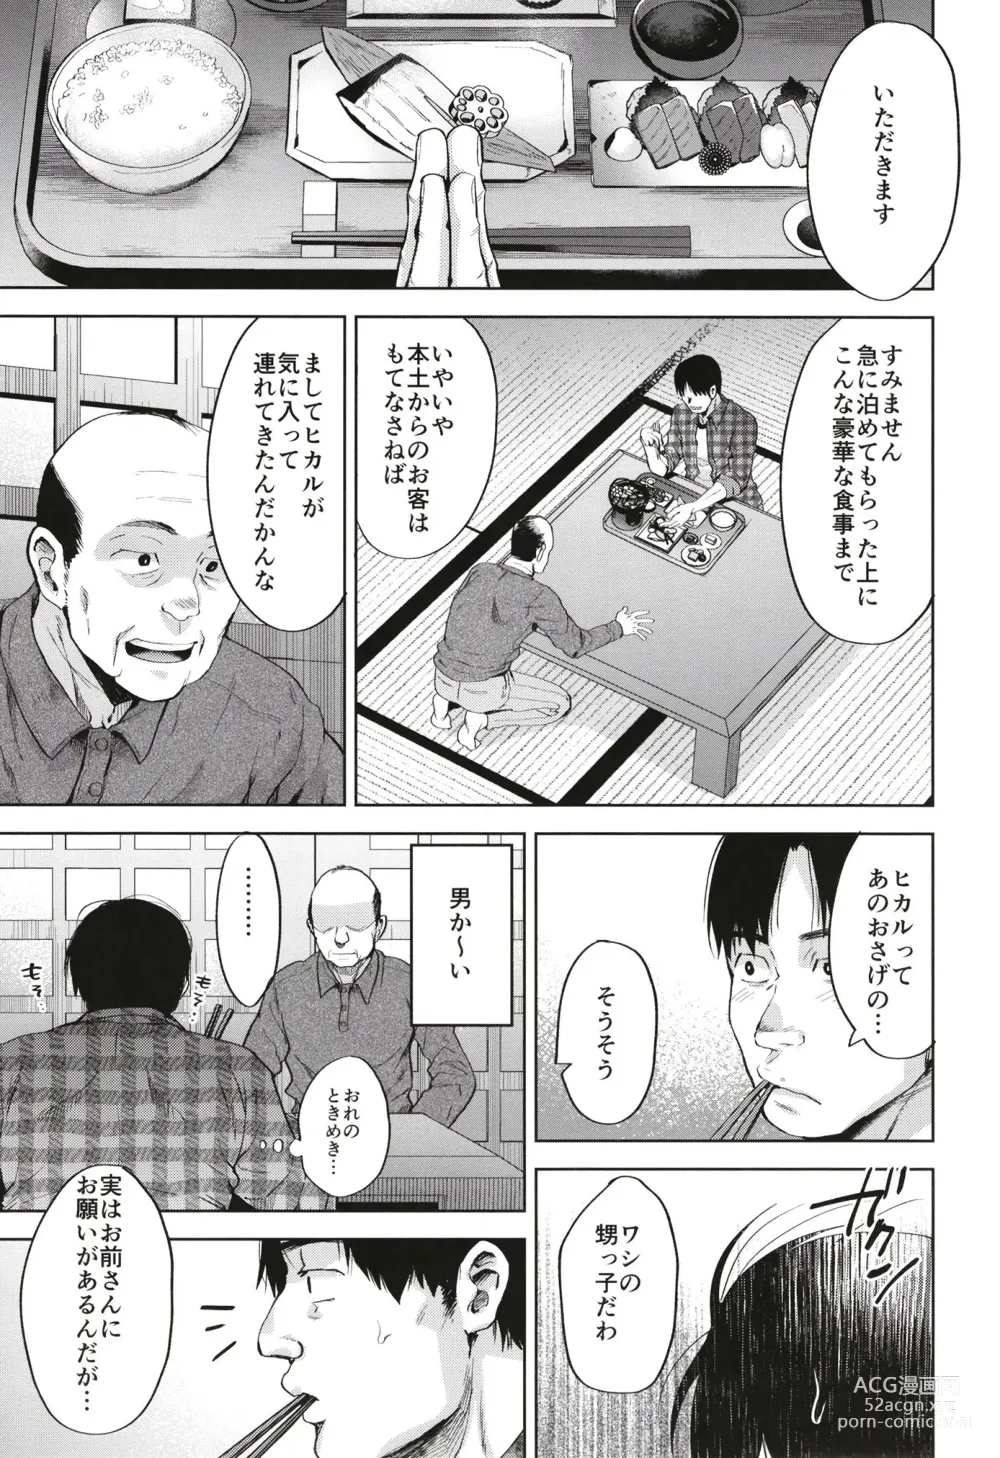 Page 7 of doujinshi Onigo matsurinoyoru